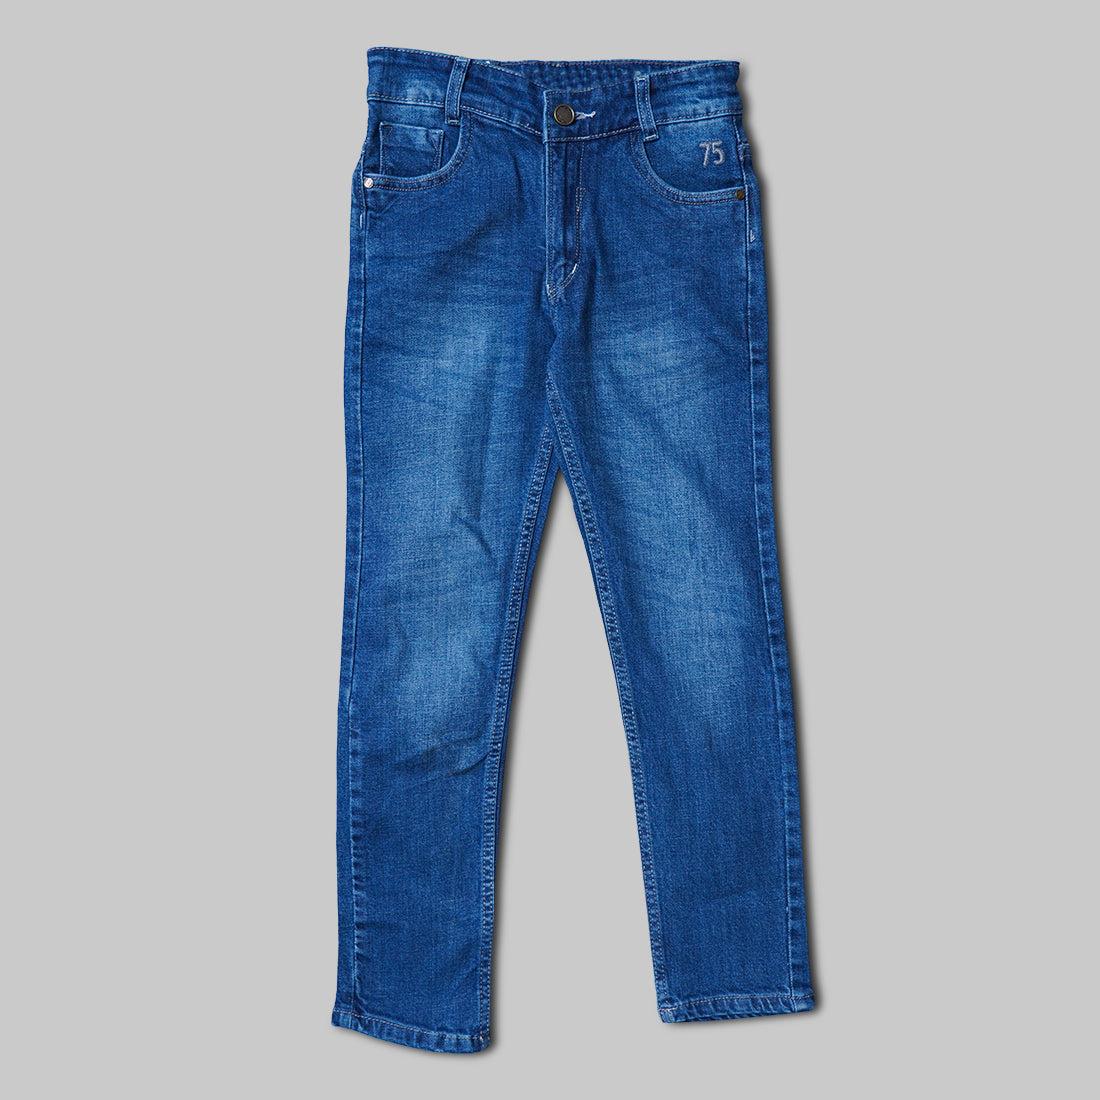 Flare lace light blue jeans pants - Wapas